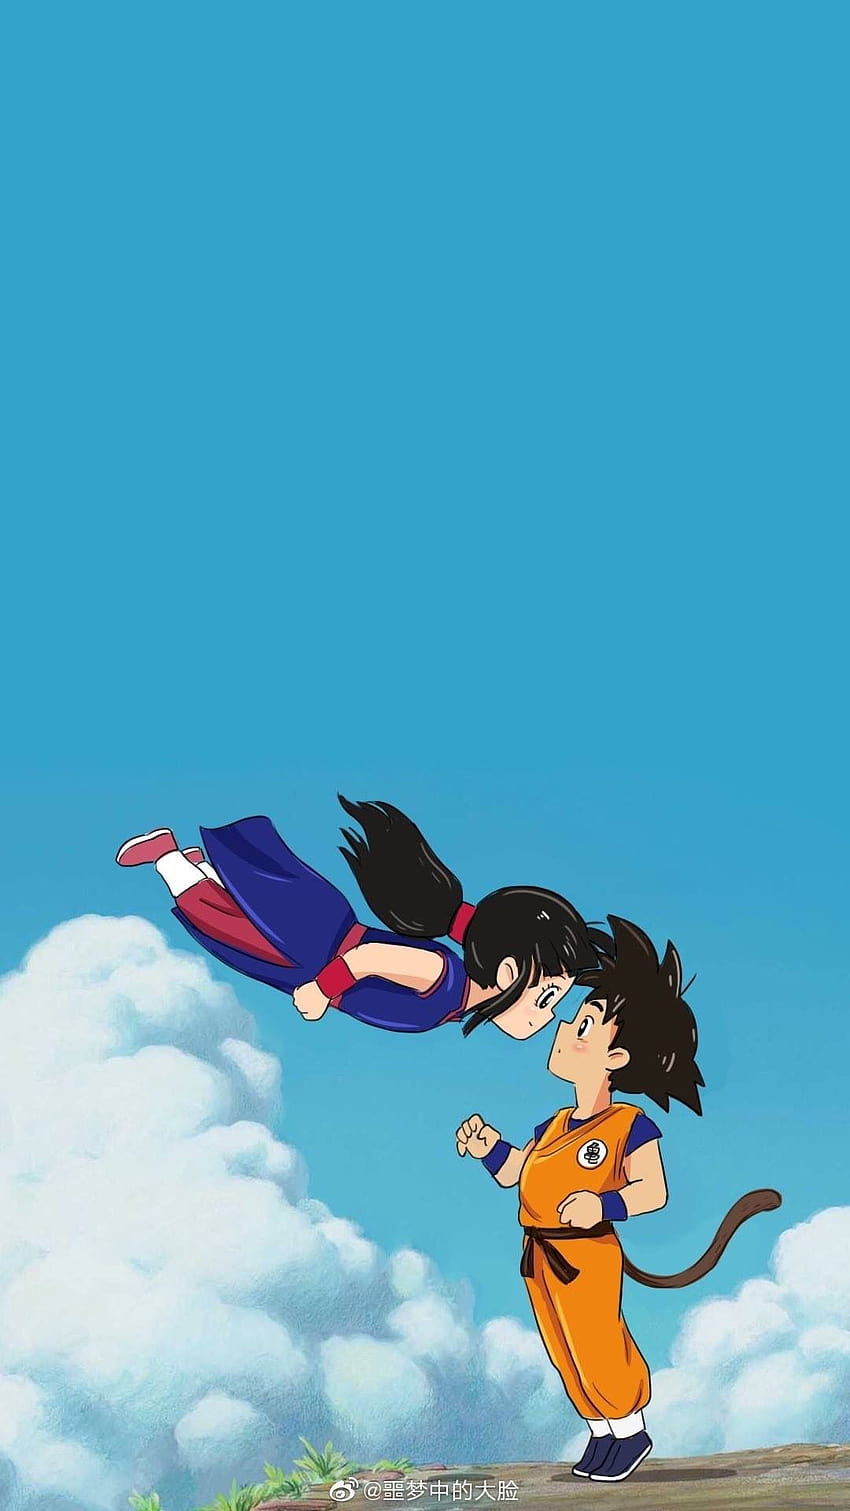 Cute Goku and Chichi, chi chi dbz HD phone wallpaper | Pxfuel